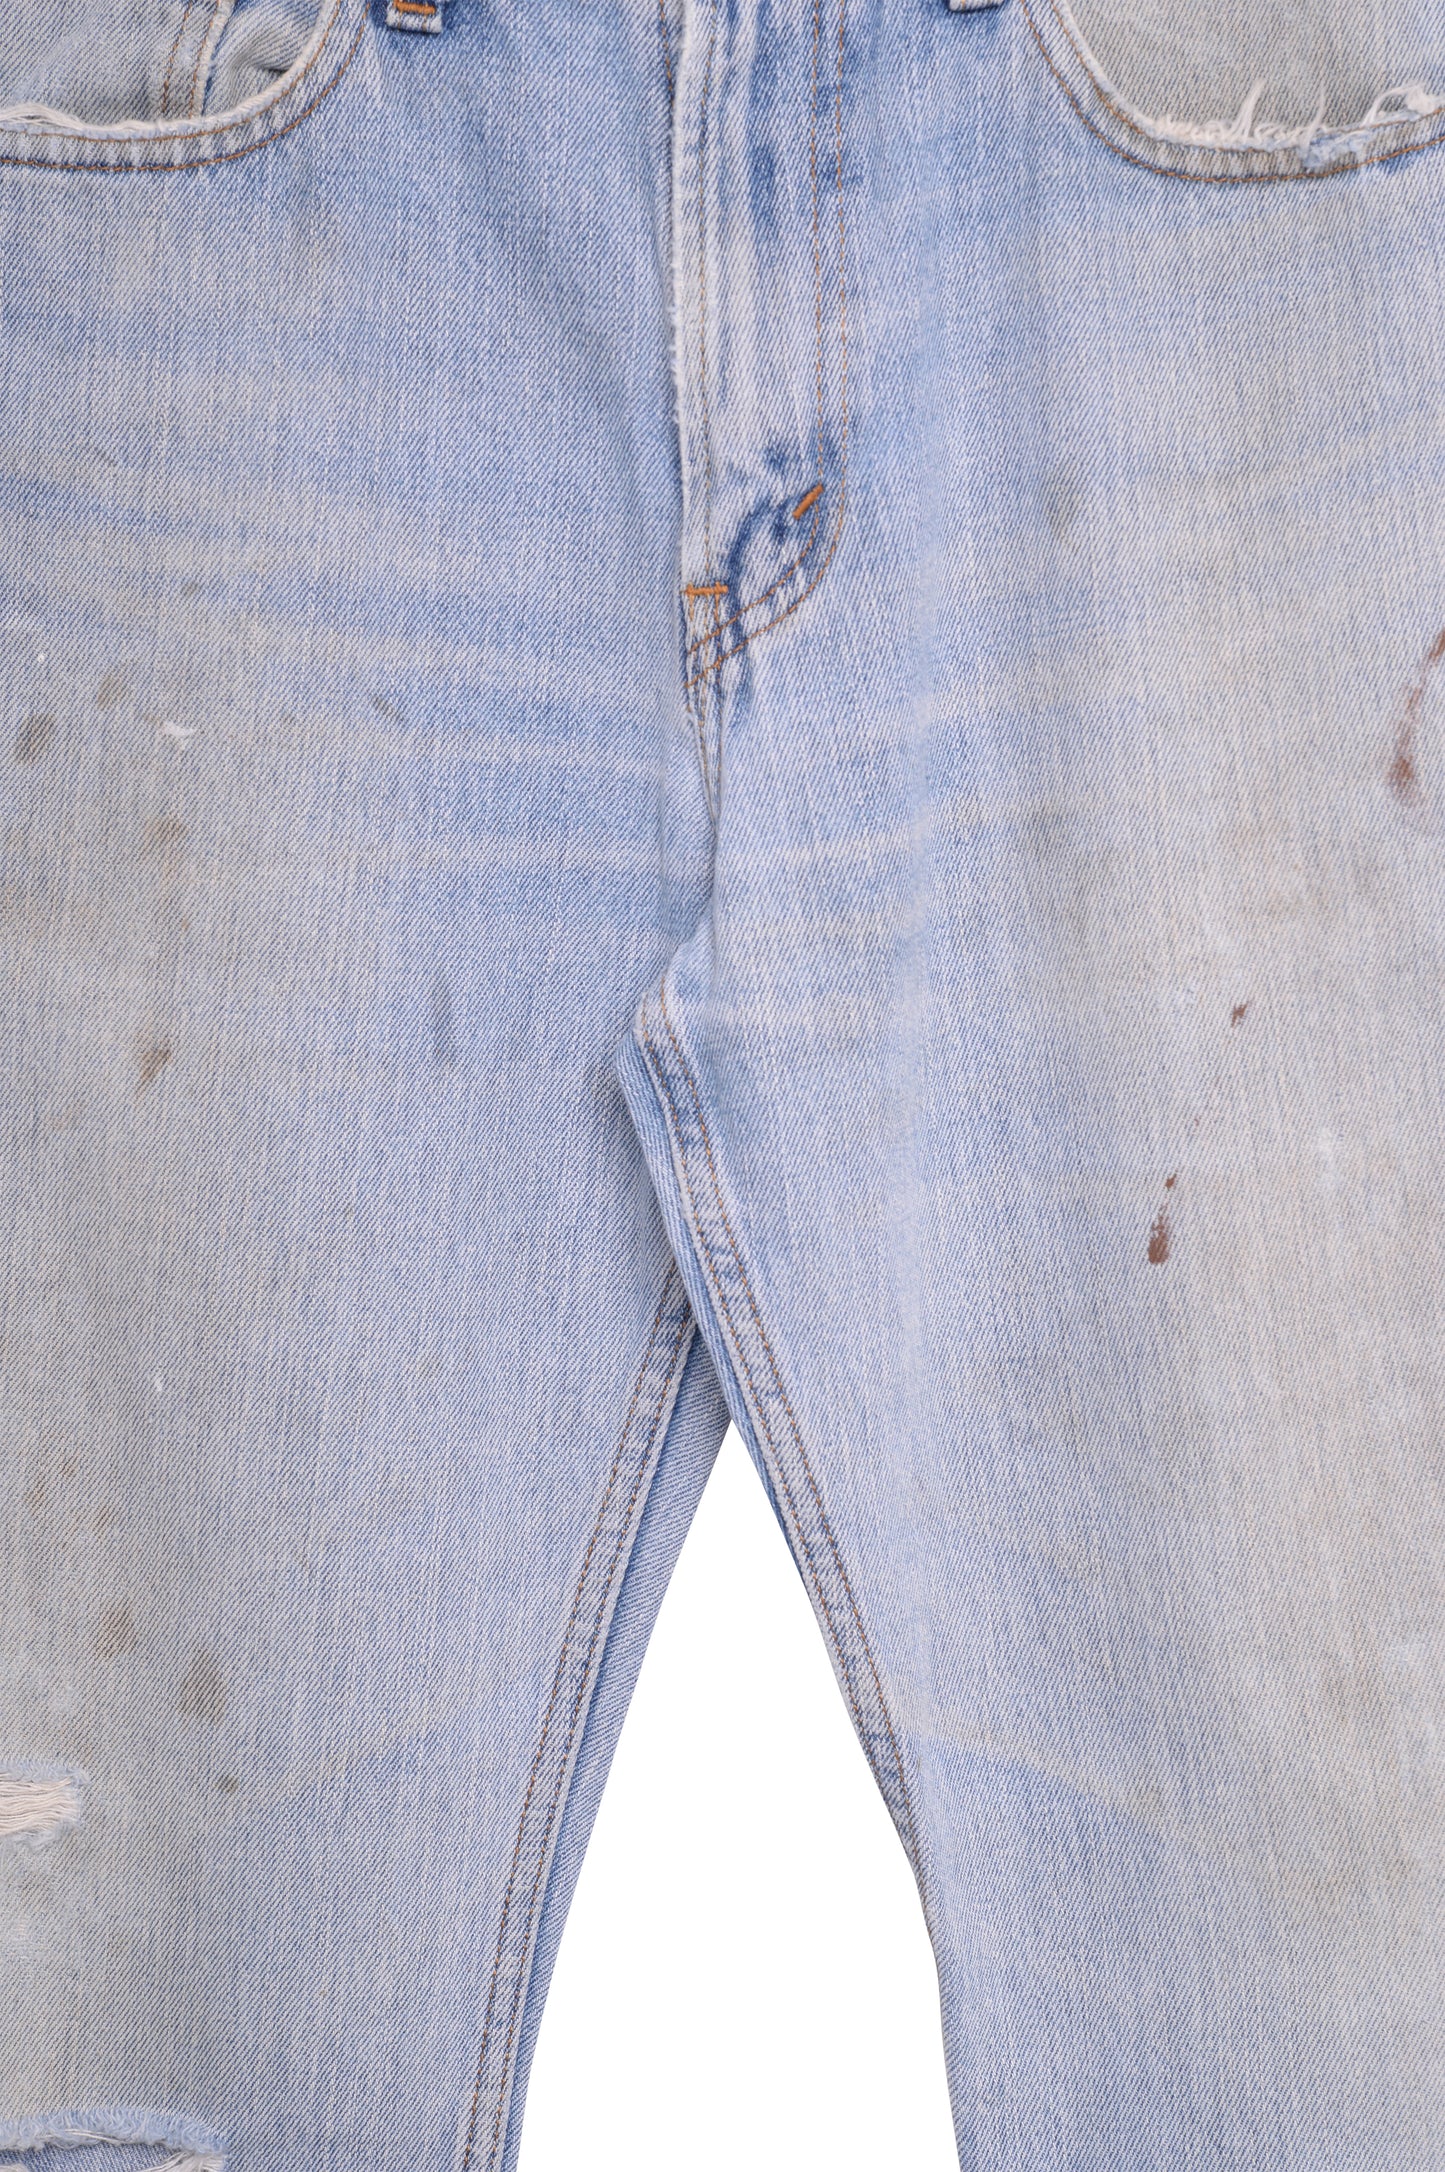 Faded Levi’s Straight 505 Jeans 32W x 32L